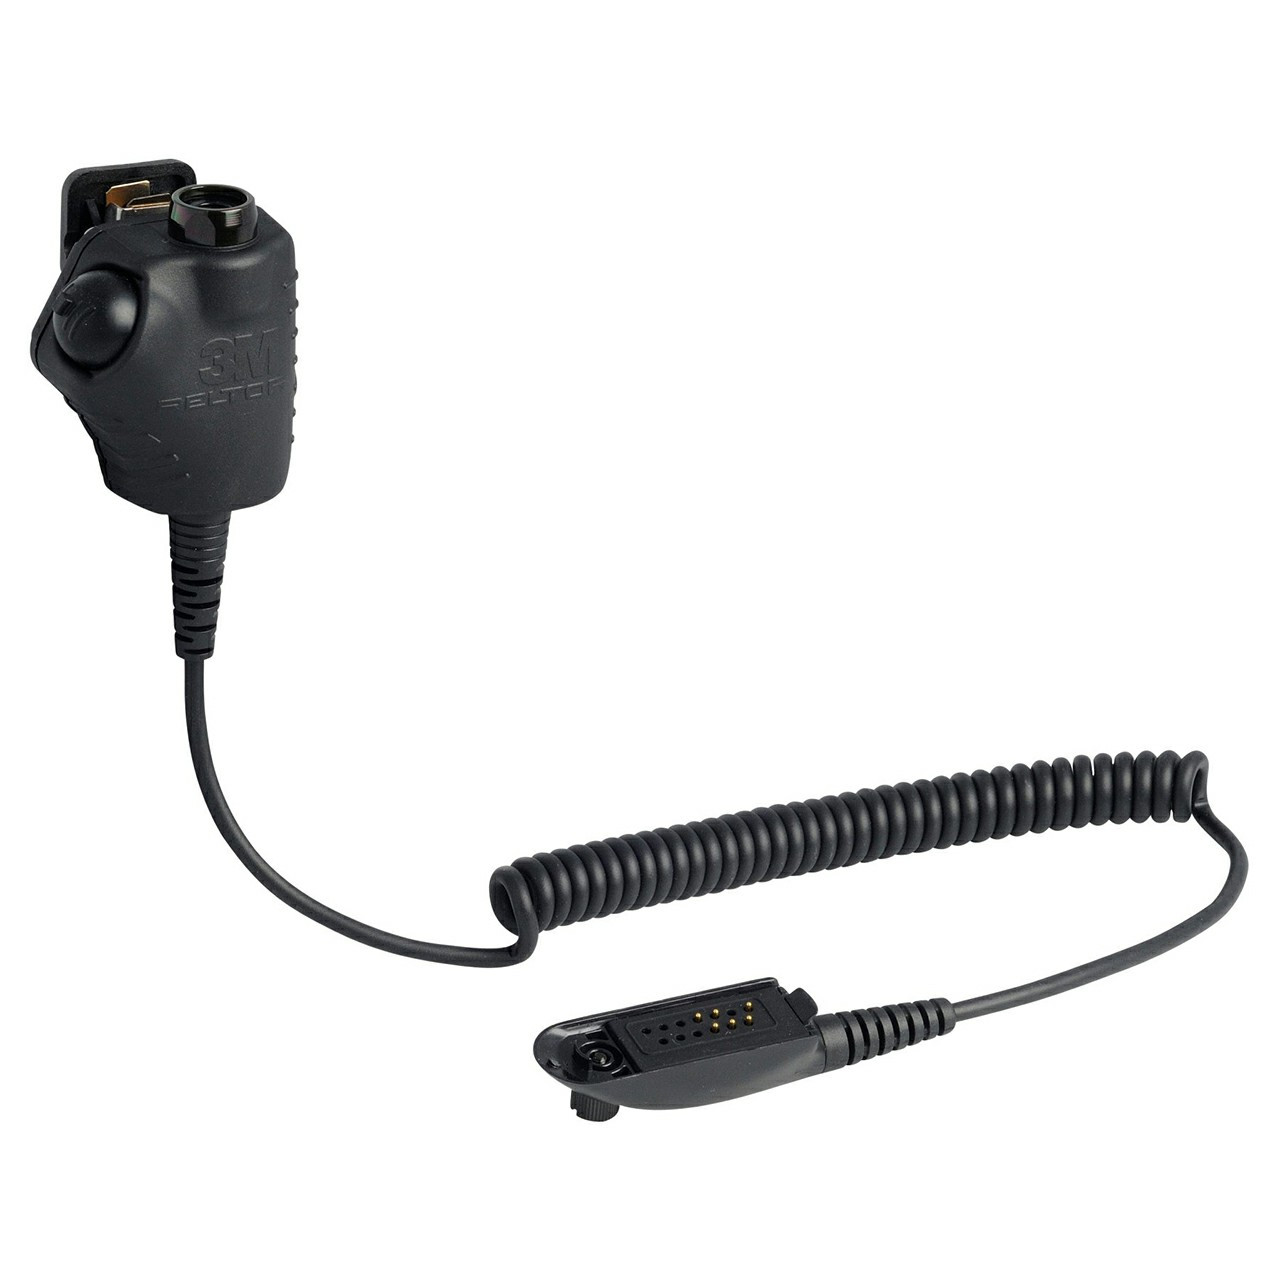 3M 7100150832 PELTOR FL4030-02 Black Push to Talk Adapter All  Industrial Tool Supply